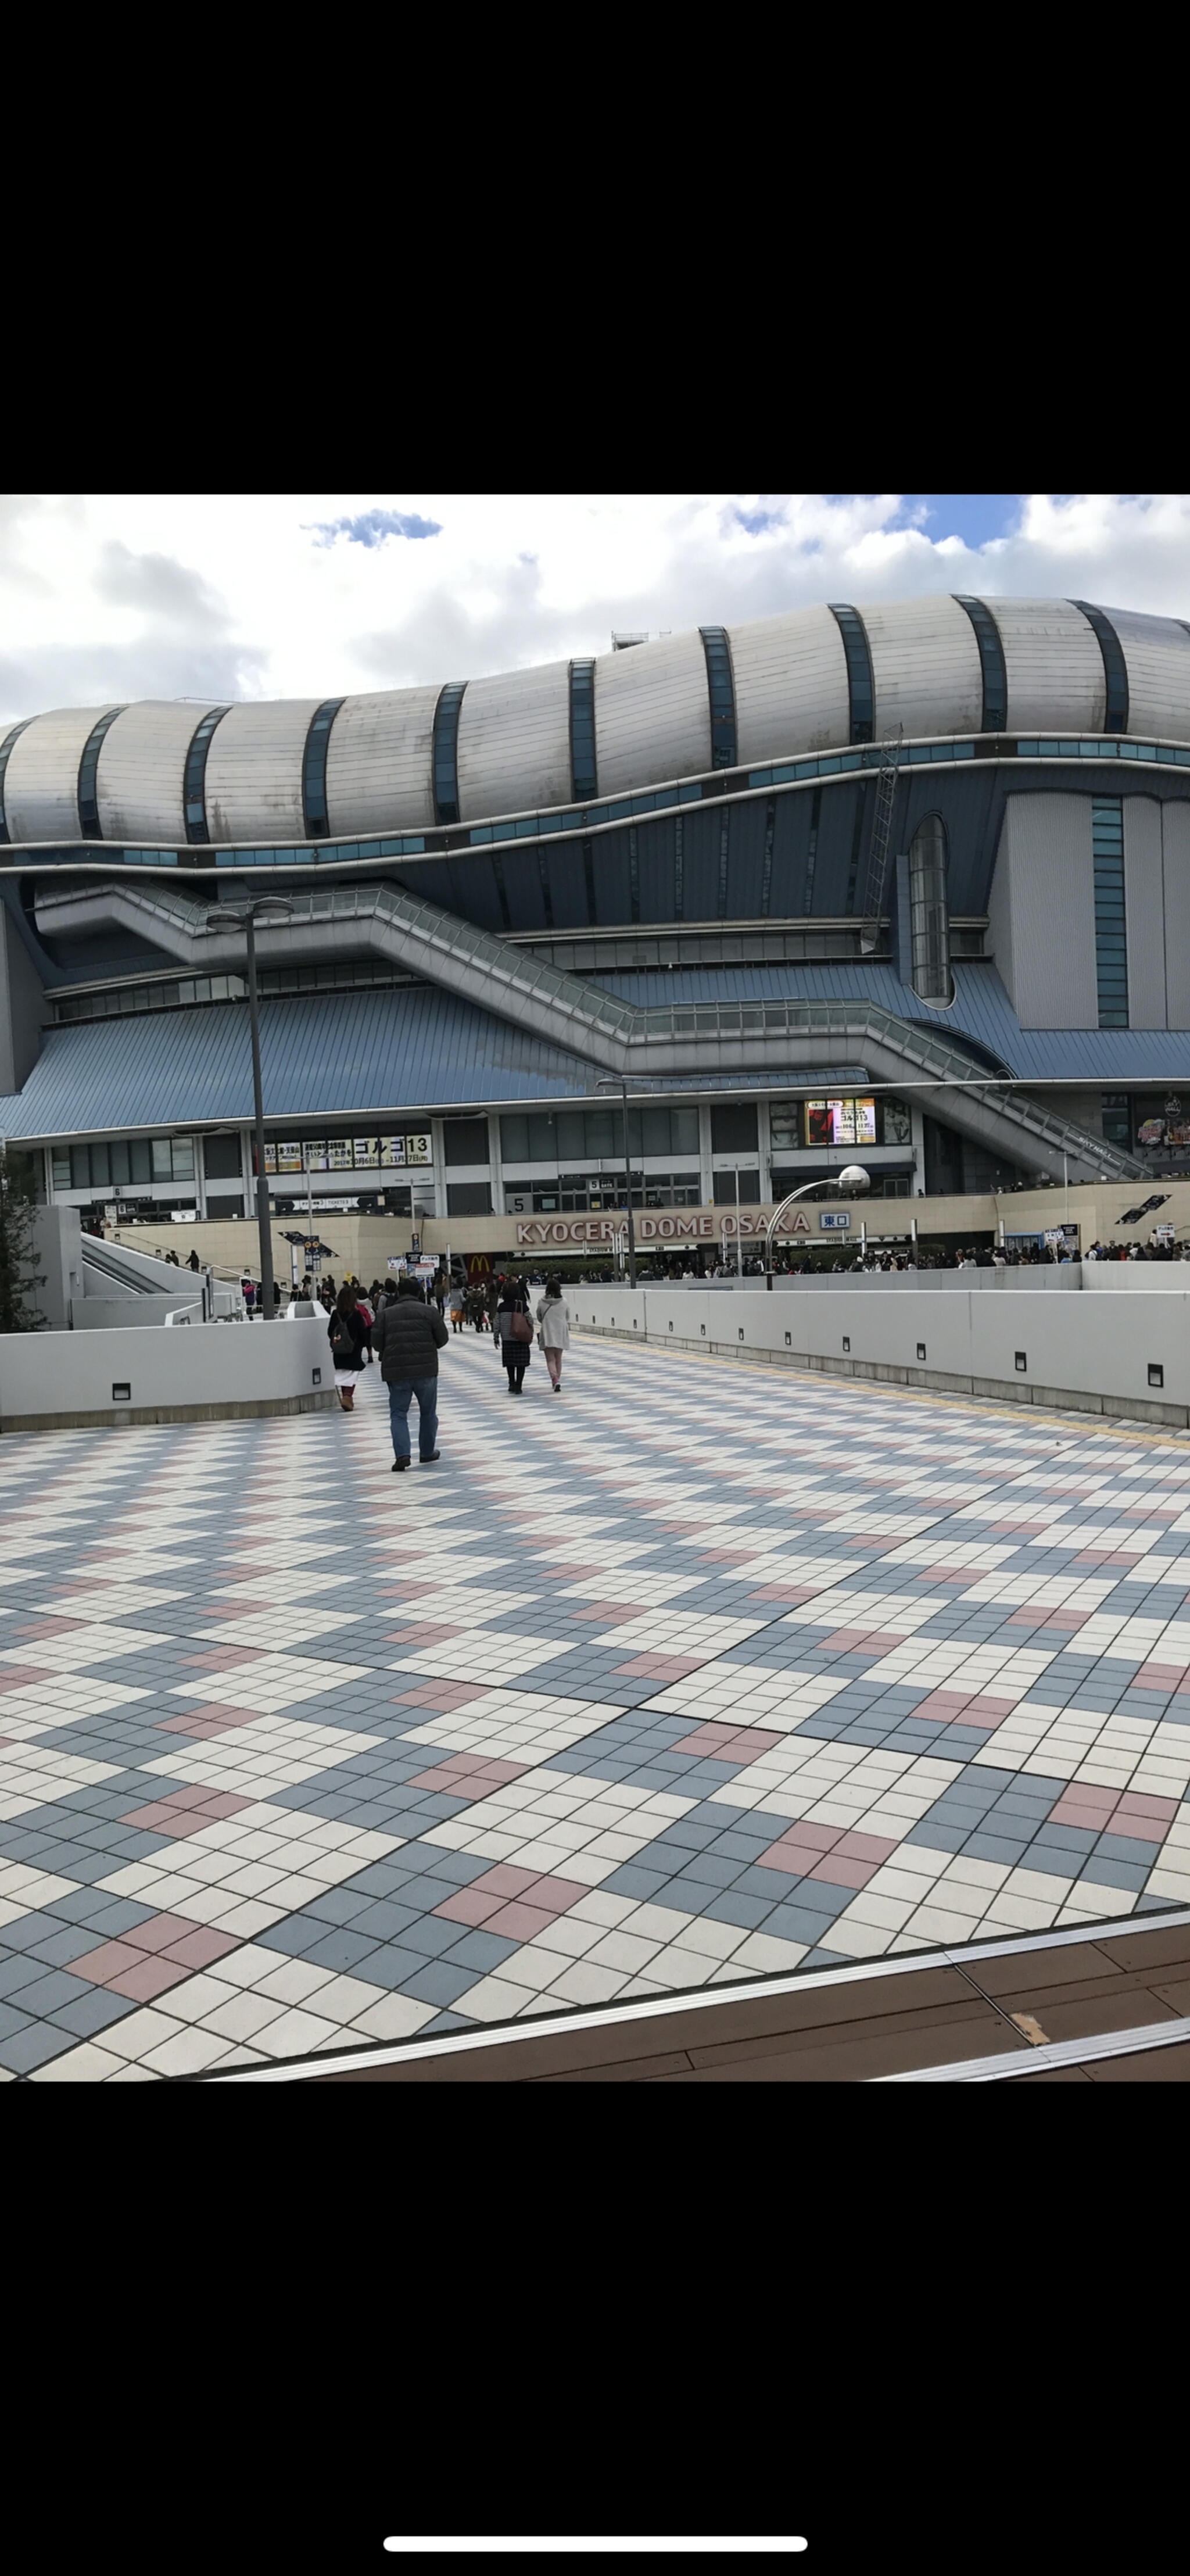 京セラドーム大阪 - 大阪市西区千代崎/野球場 | Yahoo!マップ